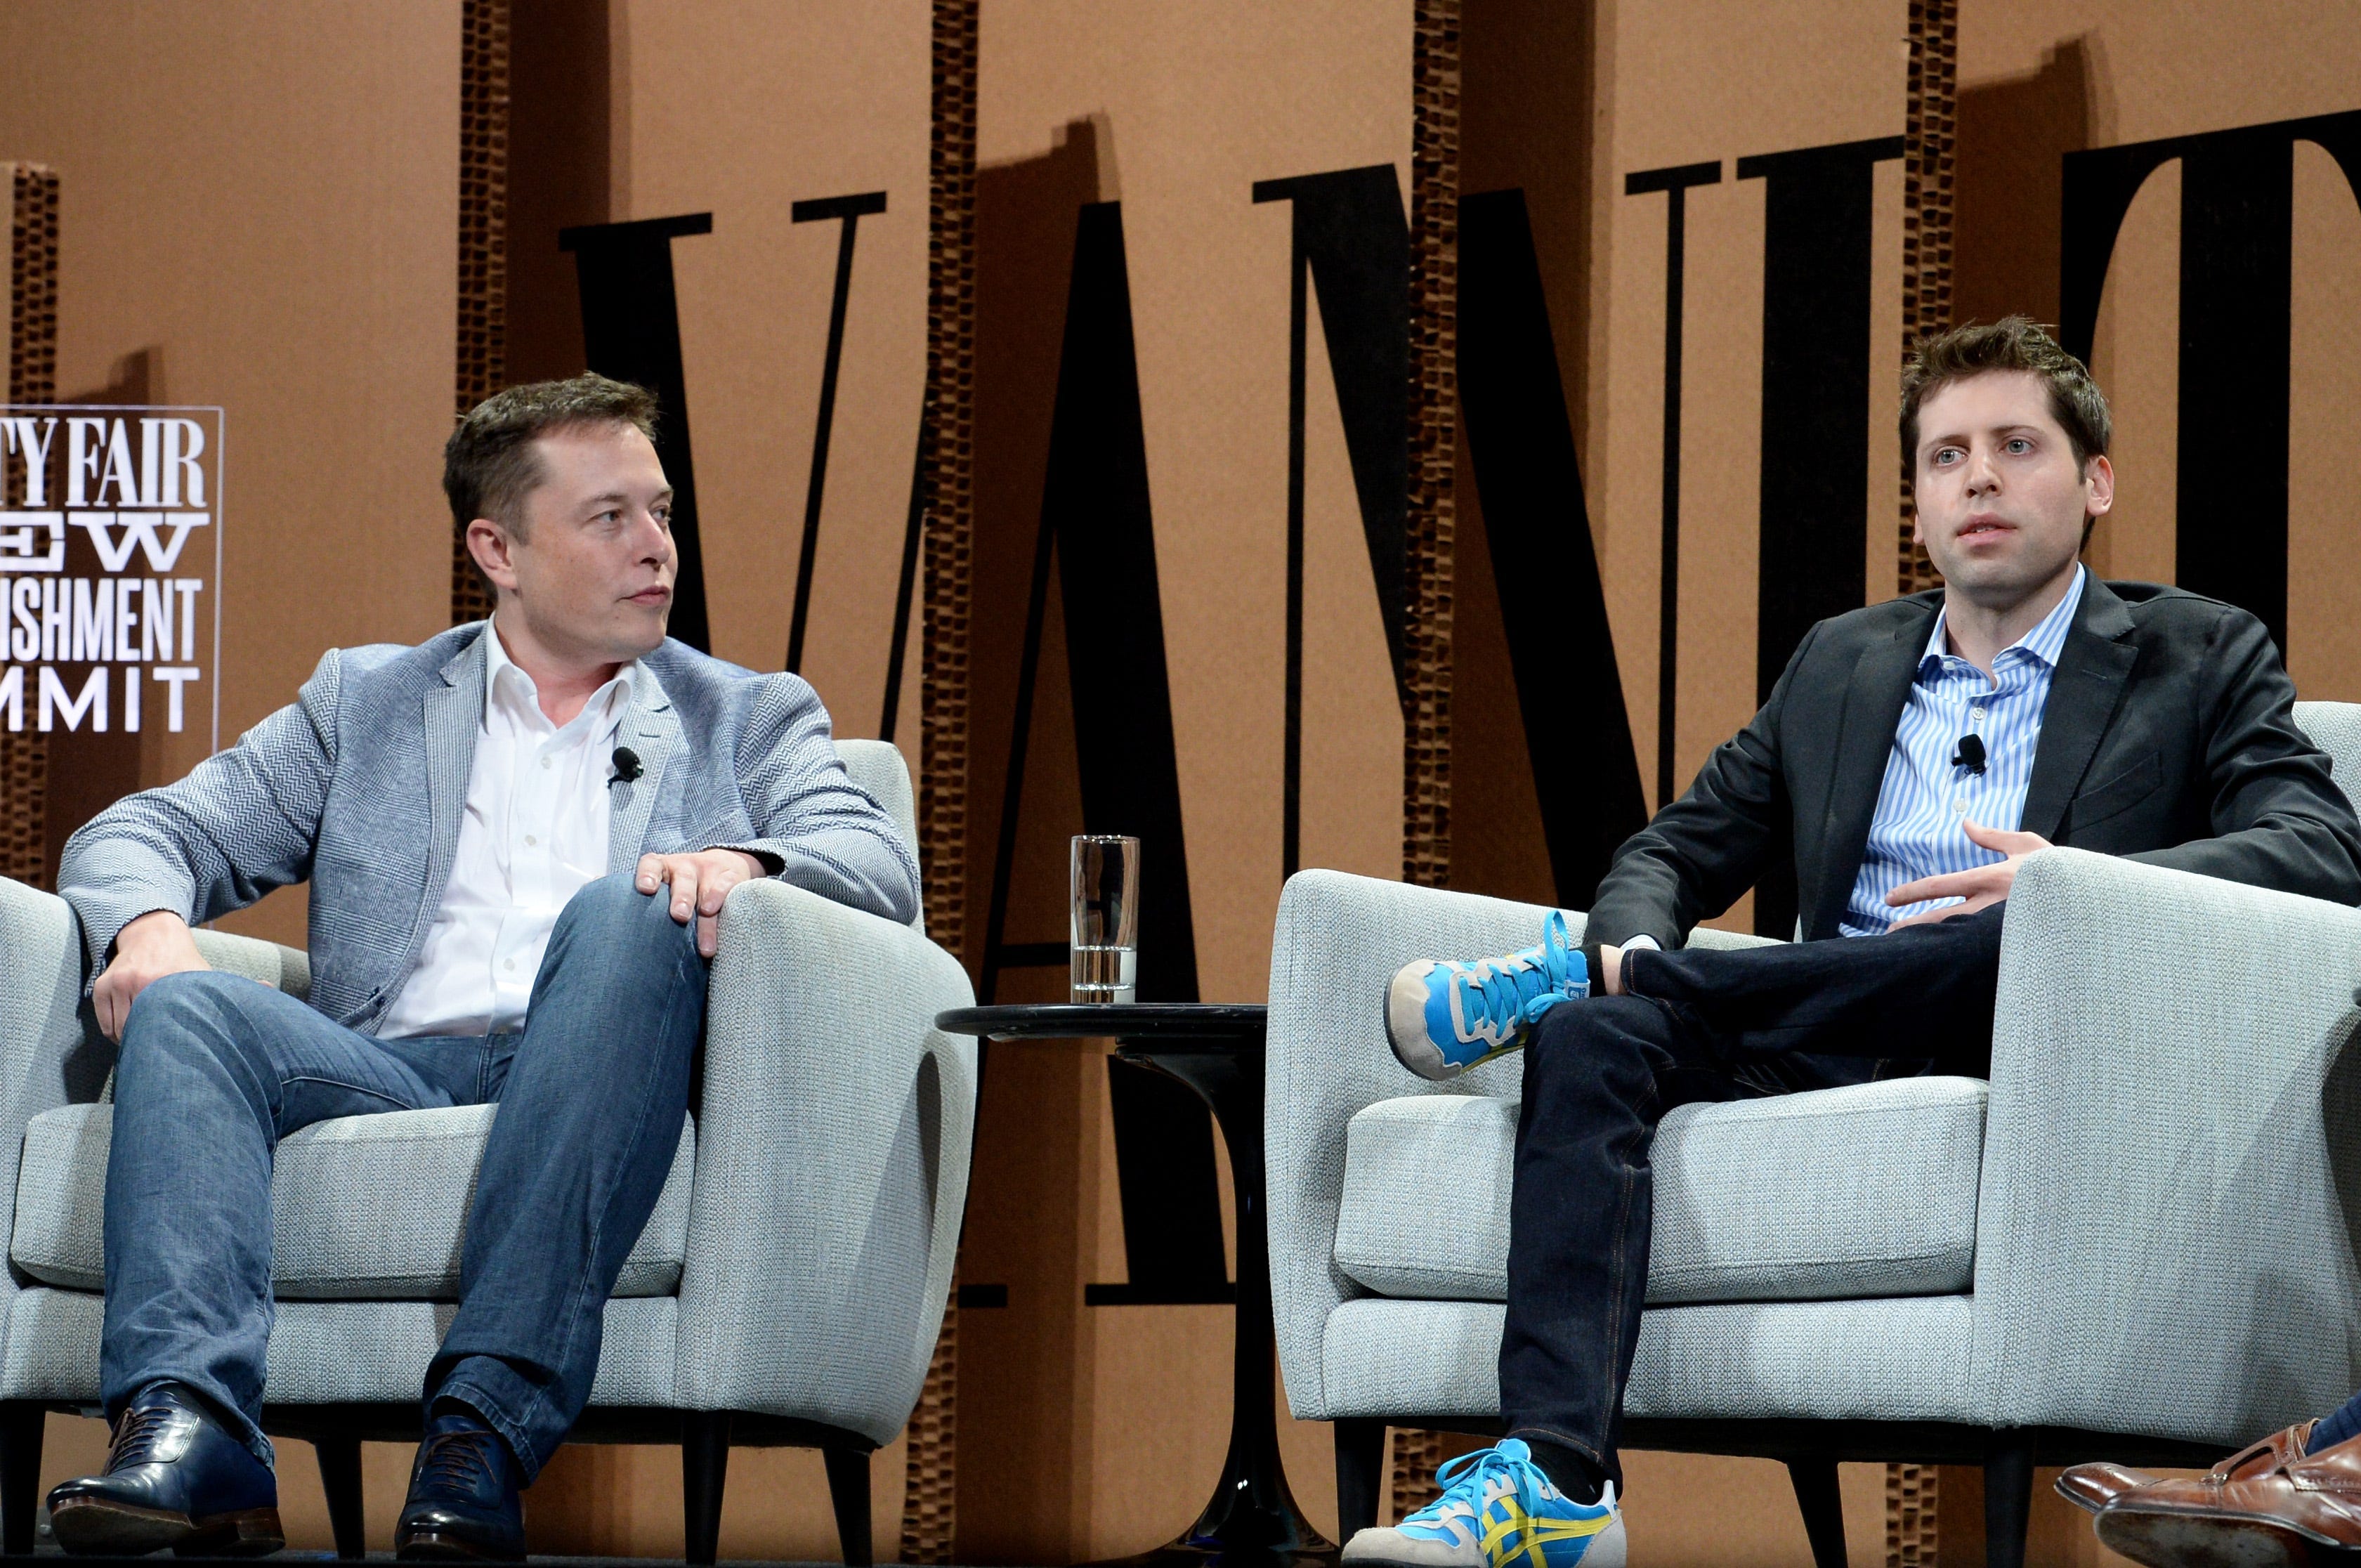 Elon Musk und Sam Altman sprechen auf der Bühne während einer Veranstaltung im Yerba Buena Center for the Arts am 6. Oktober 2015 in San Francisco, Kalifornien.